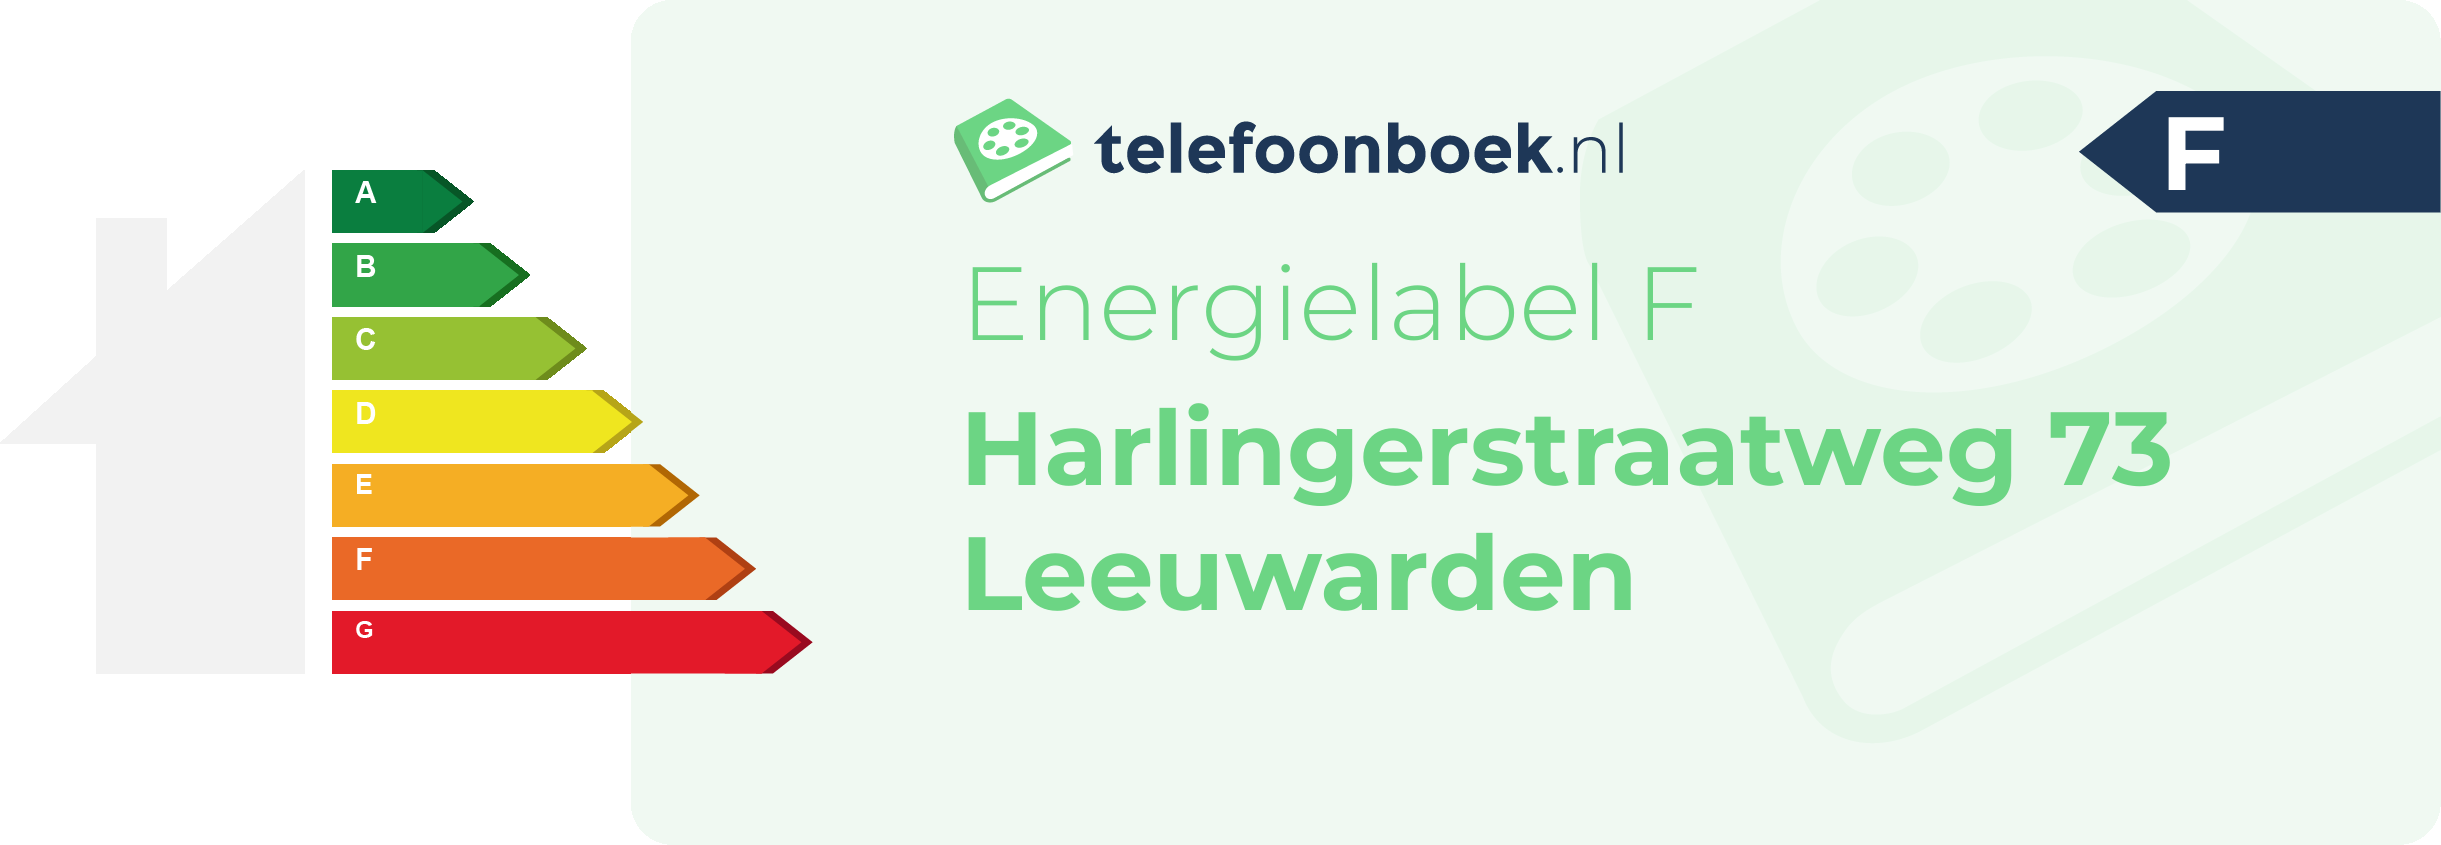 Energielabel Harlingerstraatweg 73 Leeuwarden